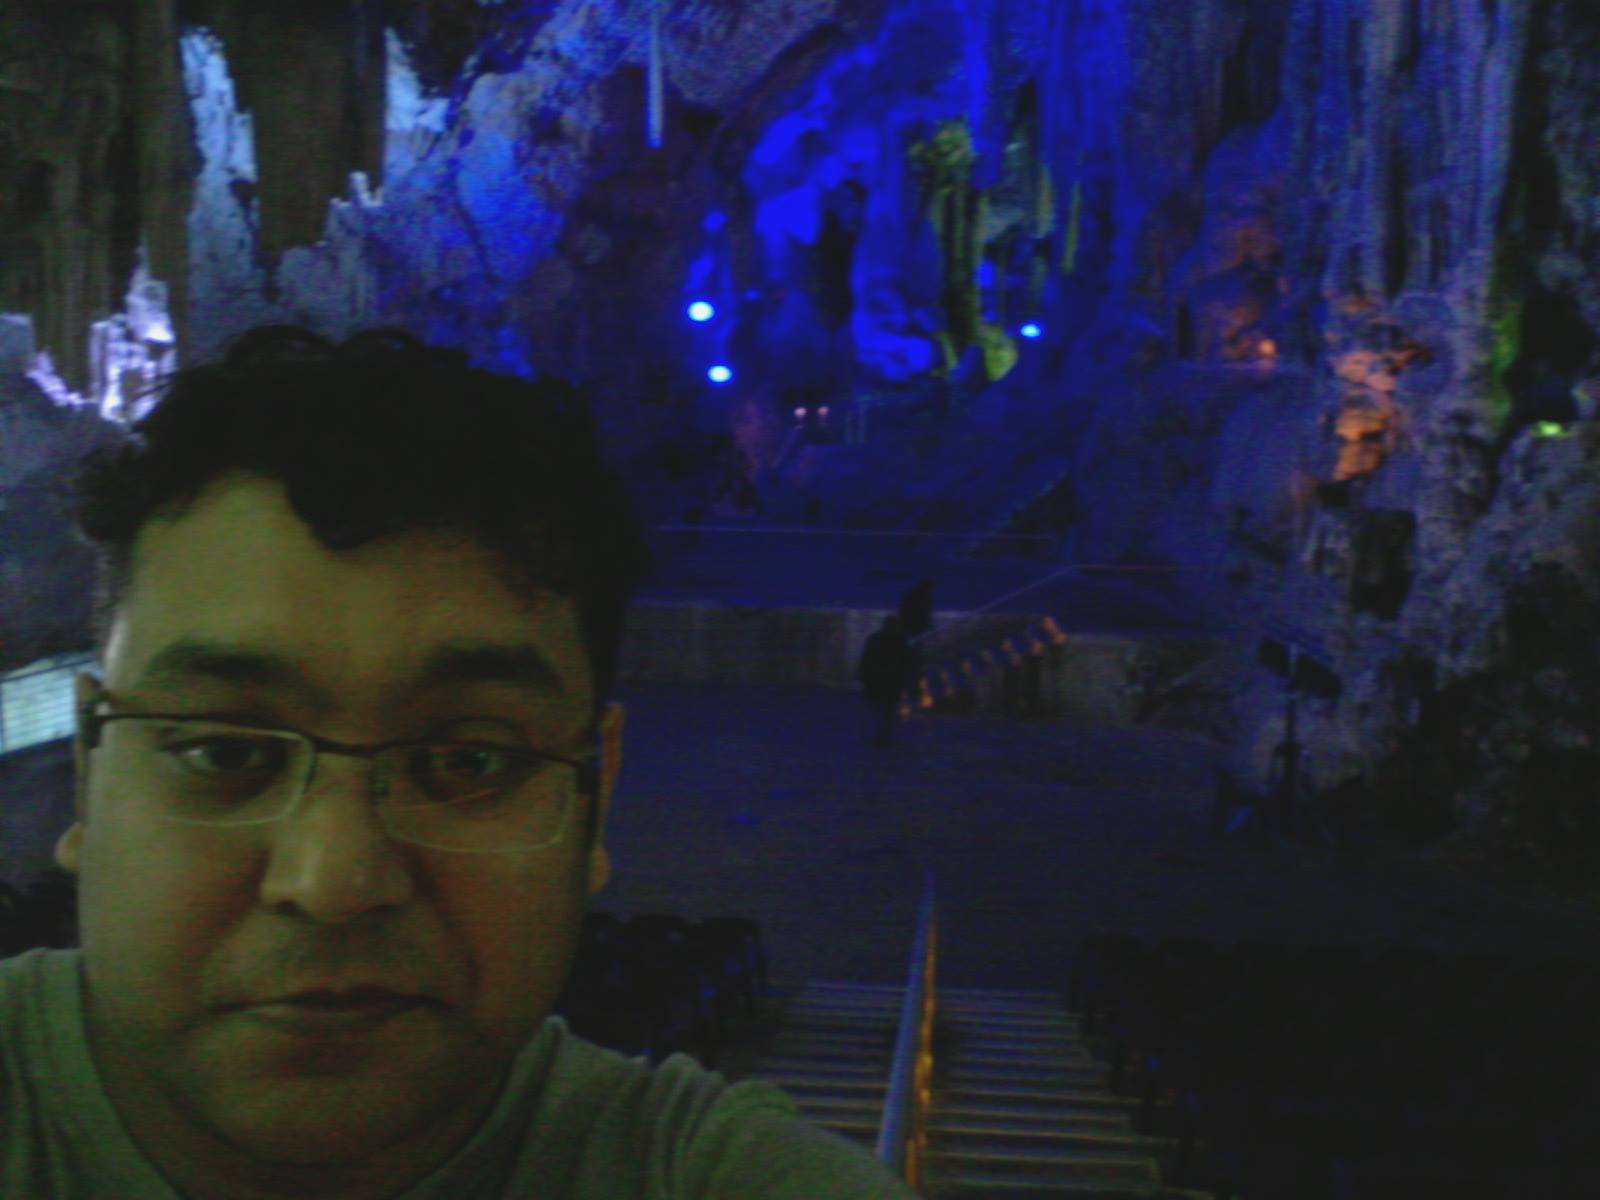 Inside St Michael's Cave